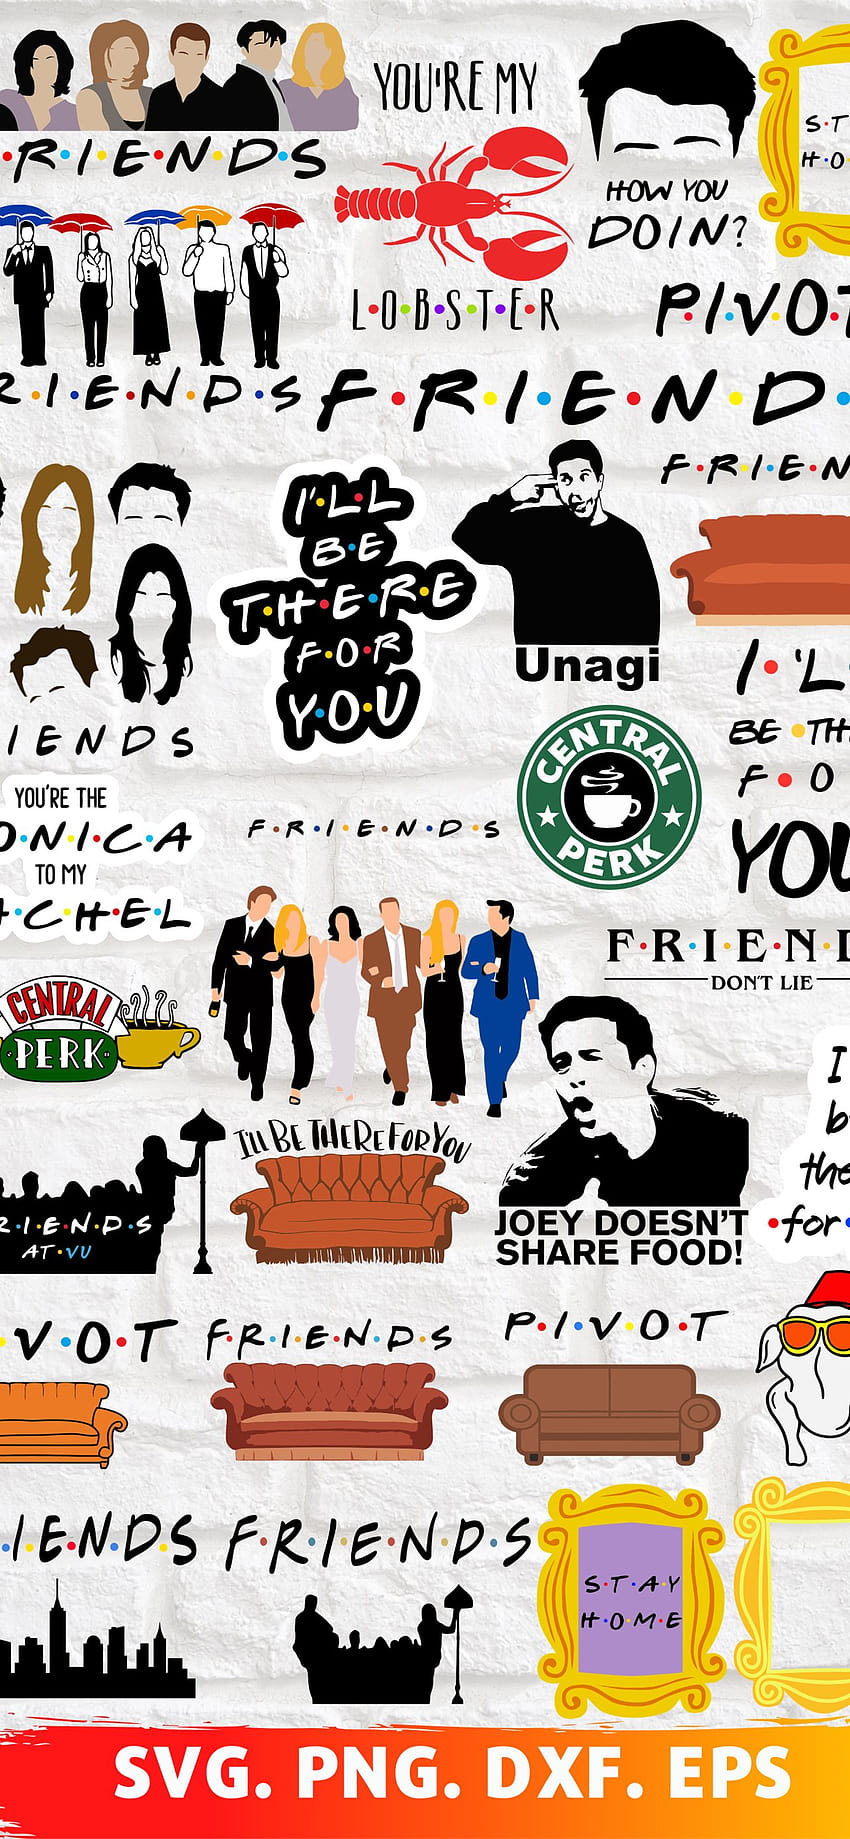 wallpaper da série friends em 4k - WALLPAPER 4K TOP